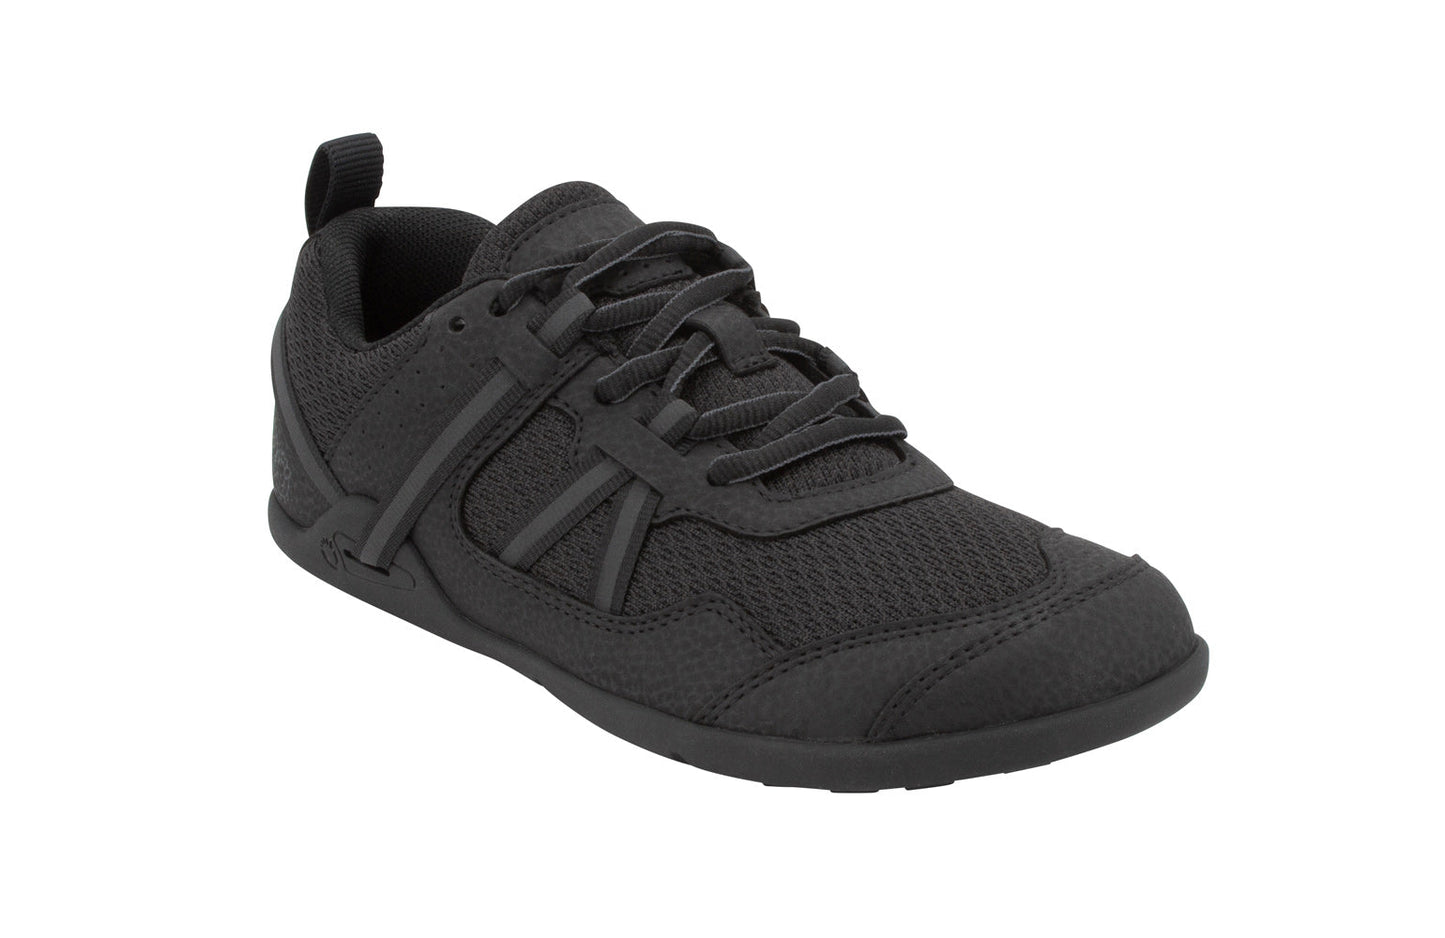 Xero Shoes Prio Kids barfods træningssko/sneakers til børn i farven black, vinklet